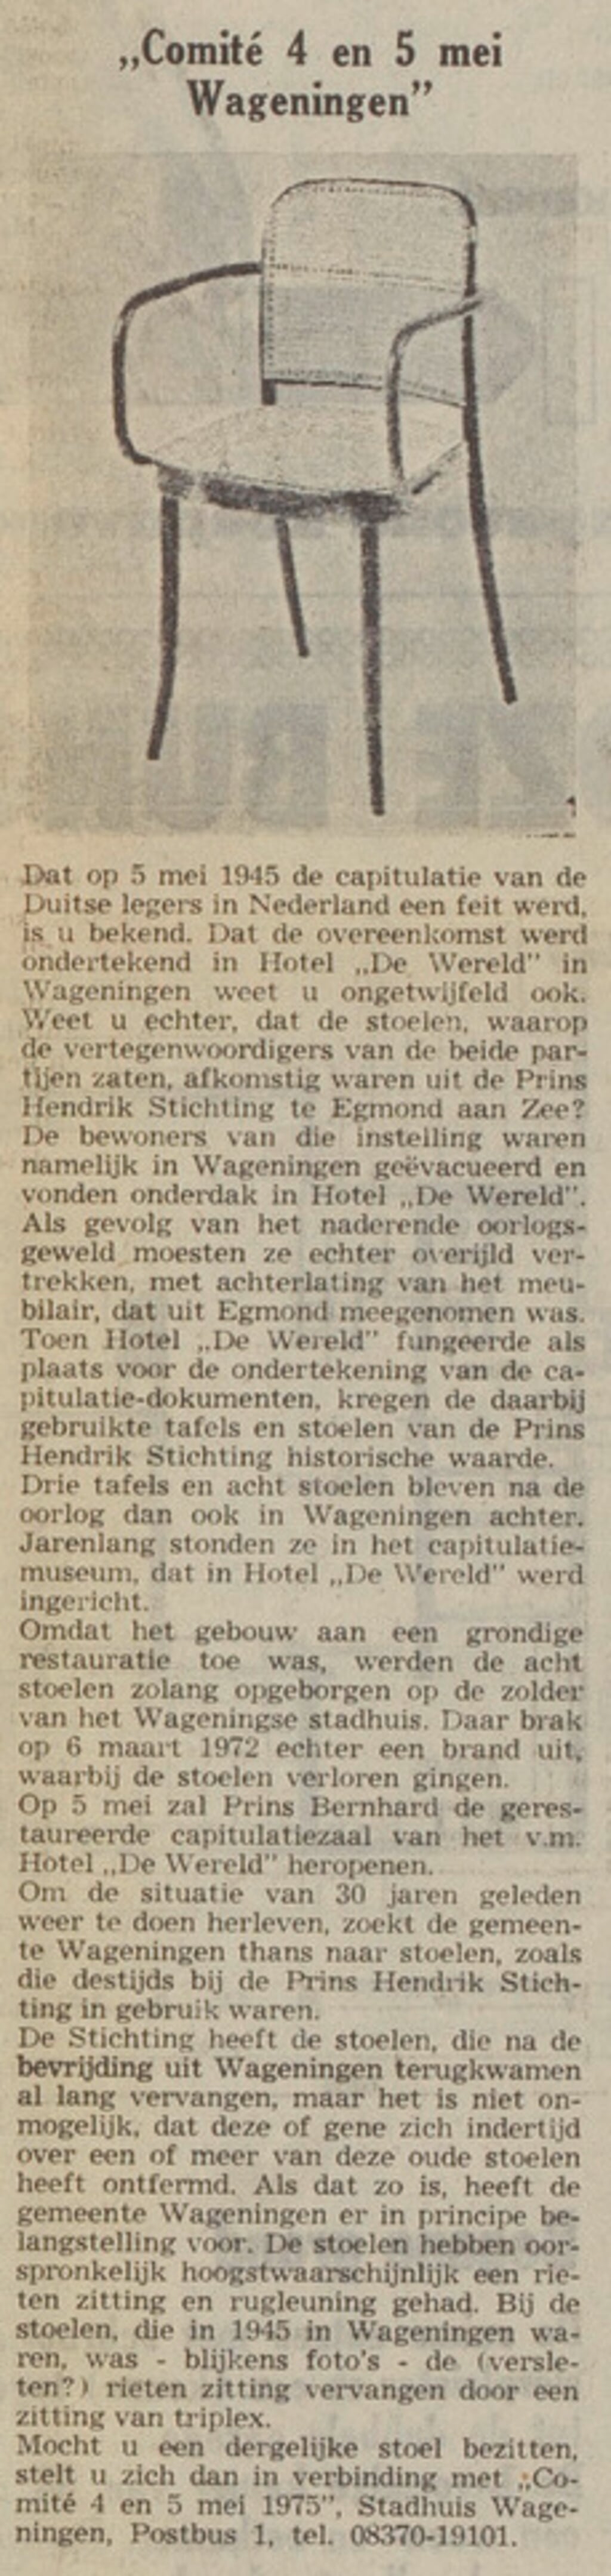 De annonce van Wageningen in De Uitkijkpost van 21 april 1975.